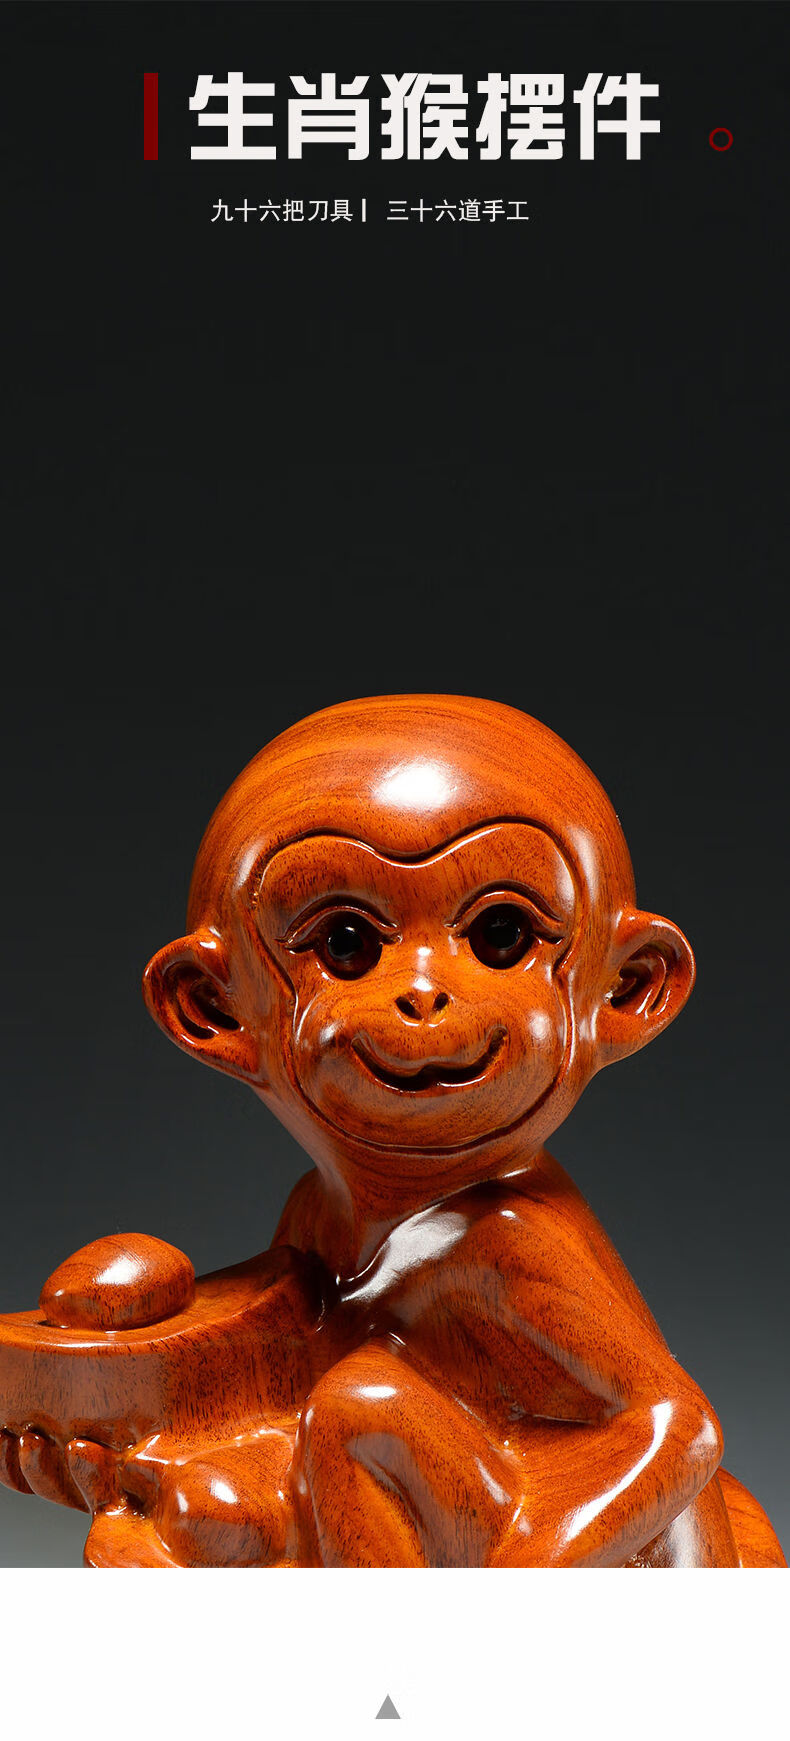 太吉良木花梨木猴子雕刻摆件十二生肖猴木头猴属猴家居客厅装饰工艺品